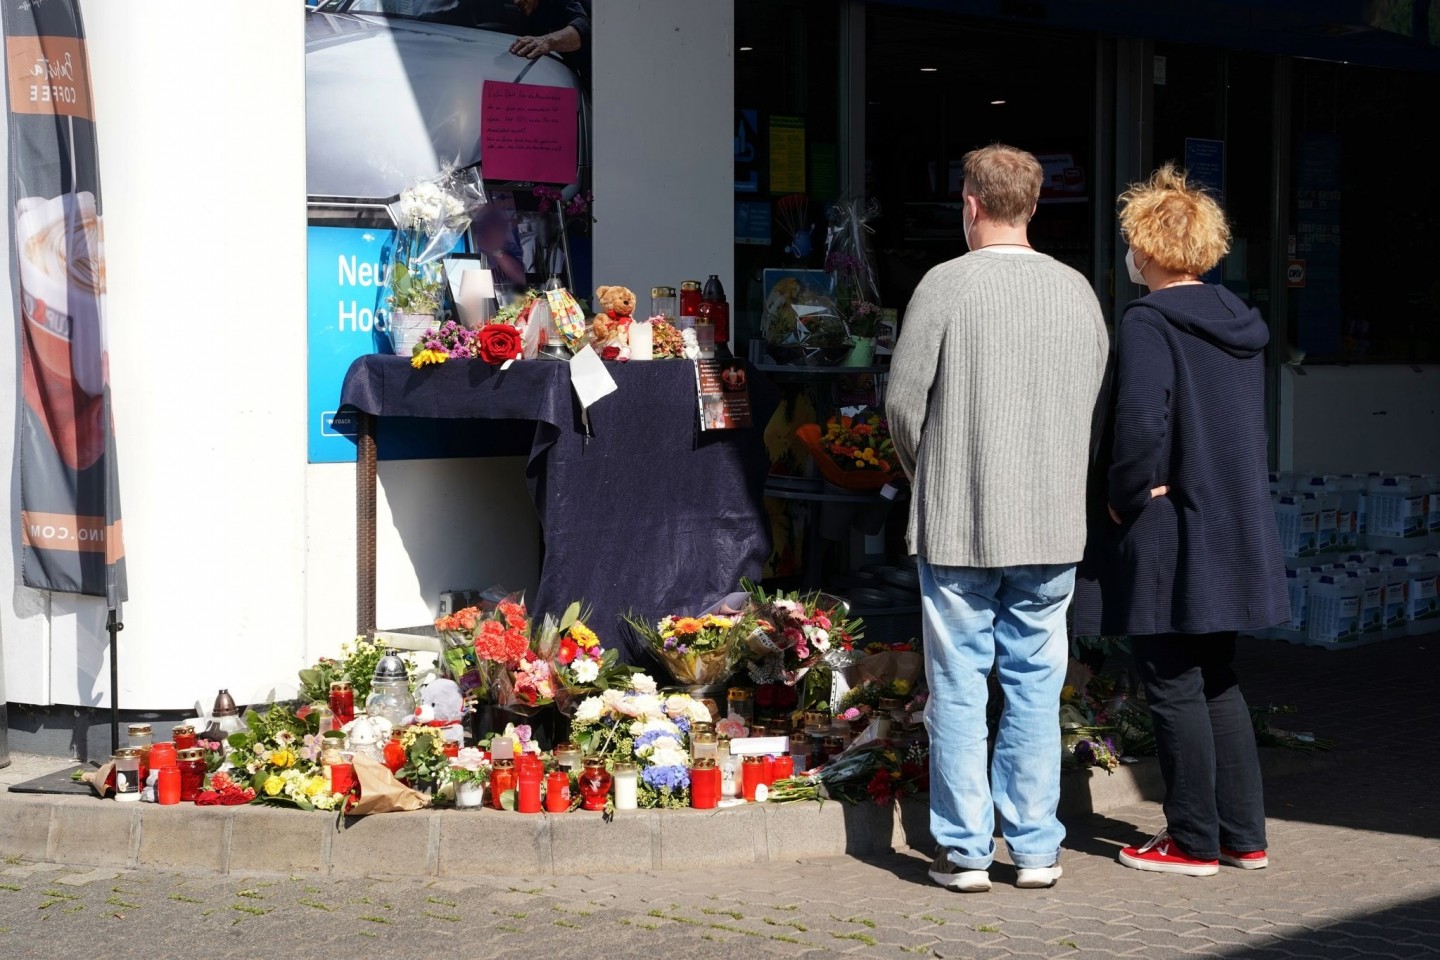 Blumen, Kerzen und Botschaften an das Opfer an der Tankstelle in Idar-Oberstein.